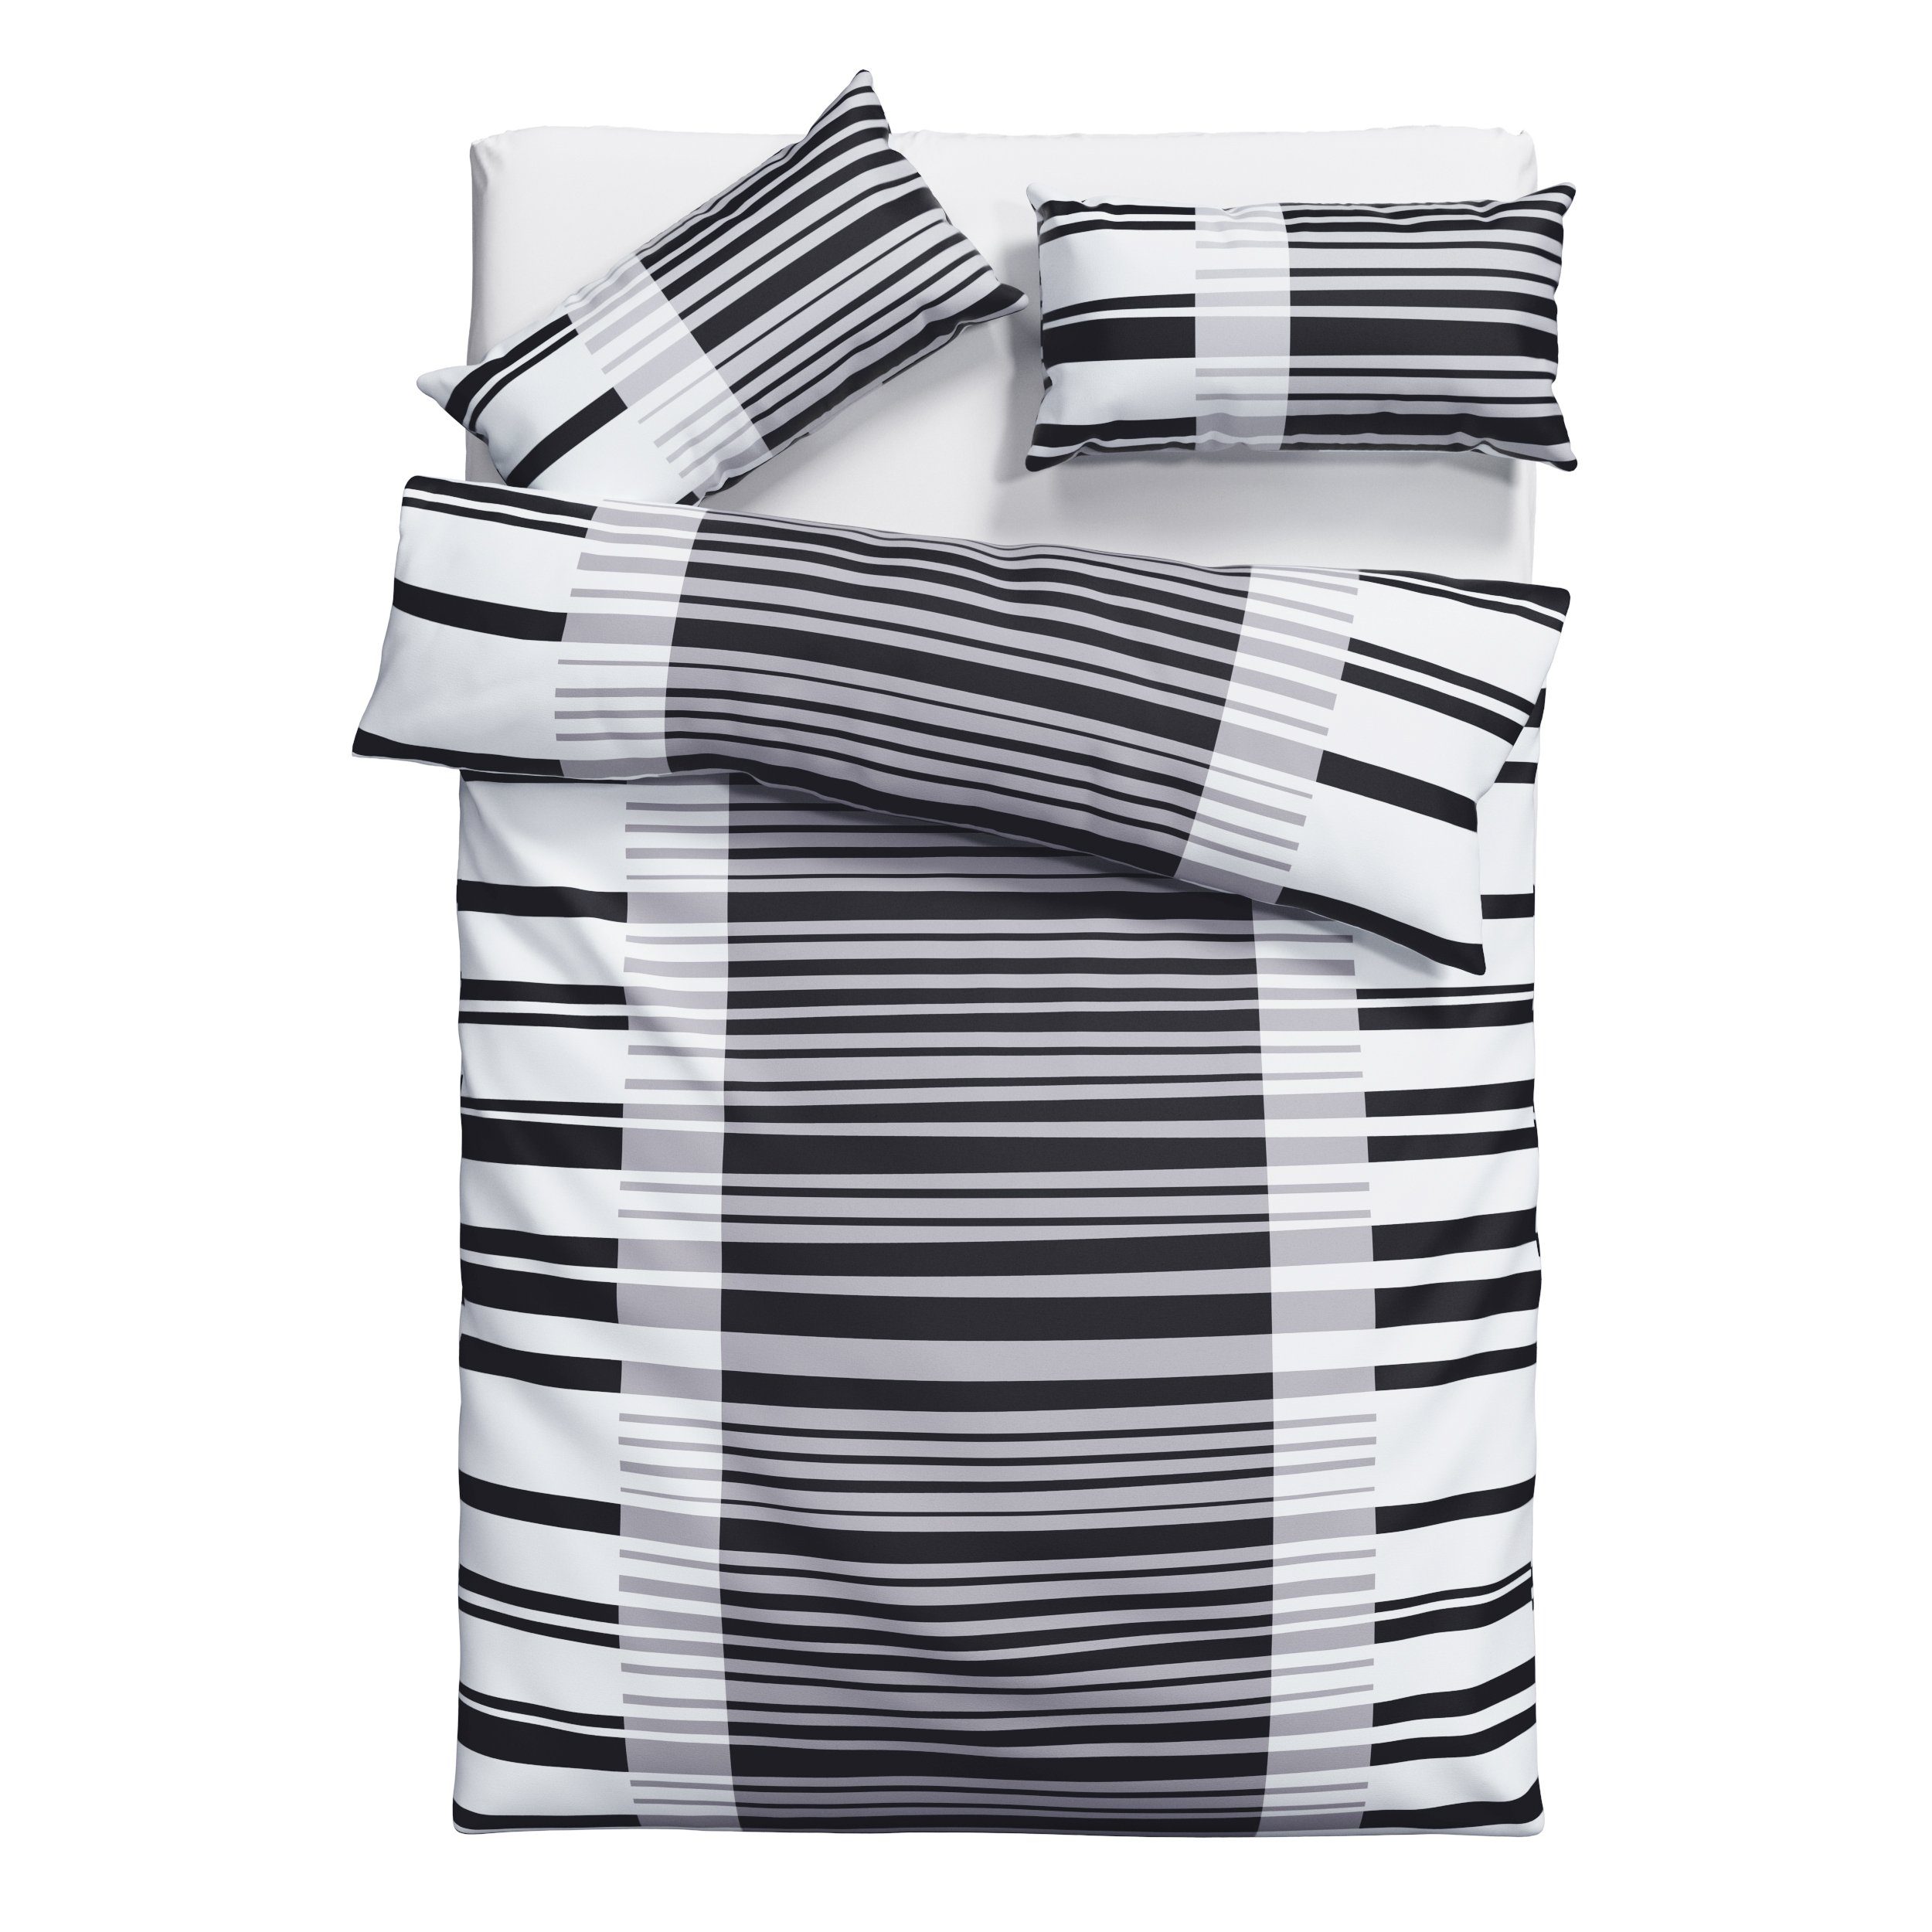 Bettwäsche Cameo in Gr. 135x200 oder 155x220 cm, Bruno Banani, Renforcé, 2 teilig, Bettwäsche aus Baumwolle, Bettwäsche im Streifen-Design schwarz/weiß